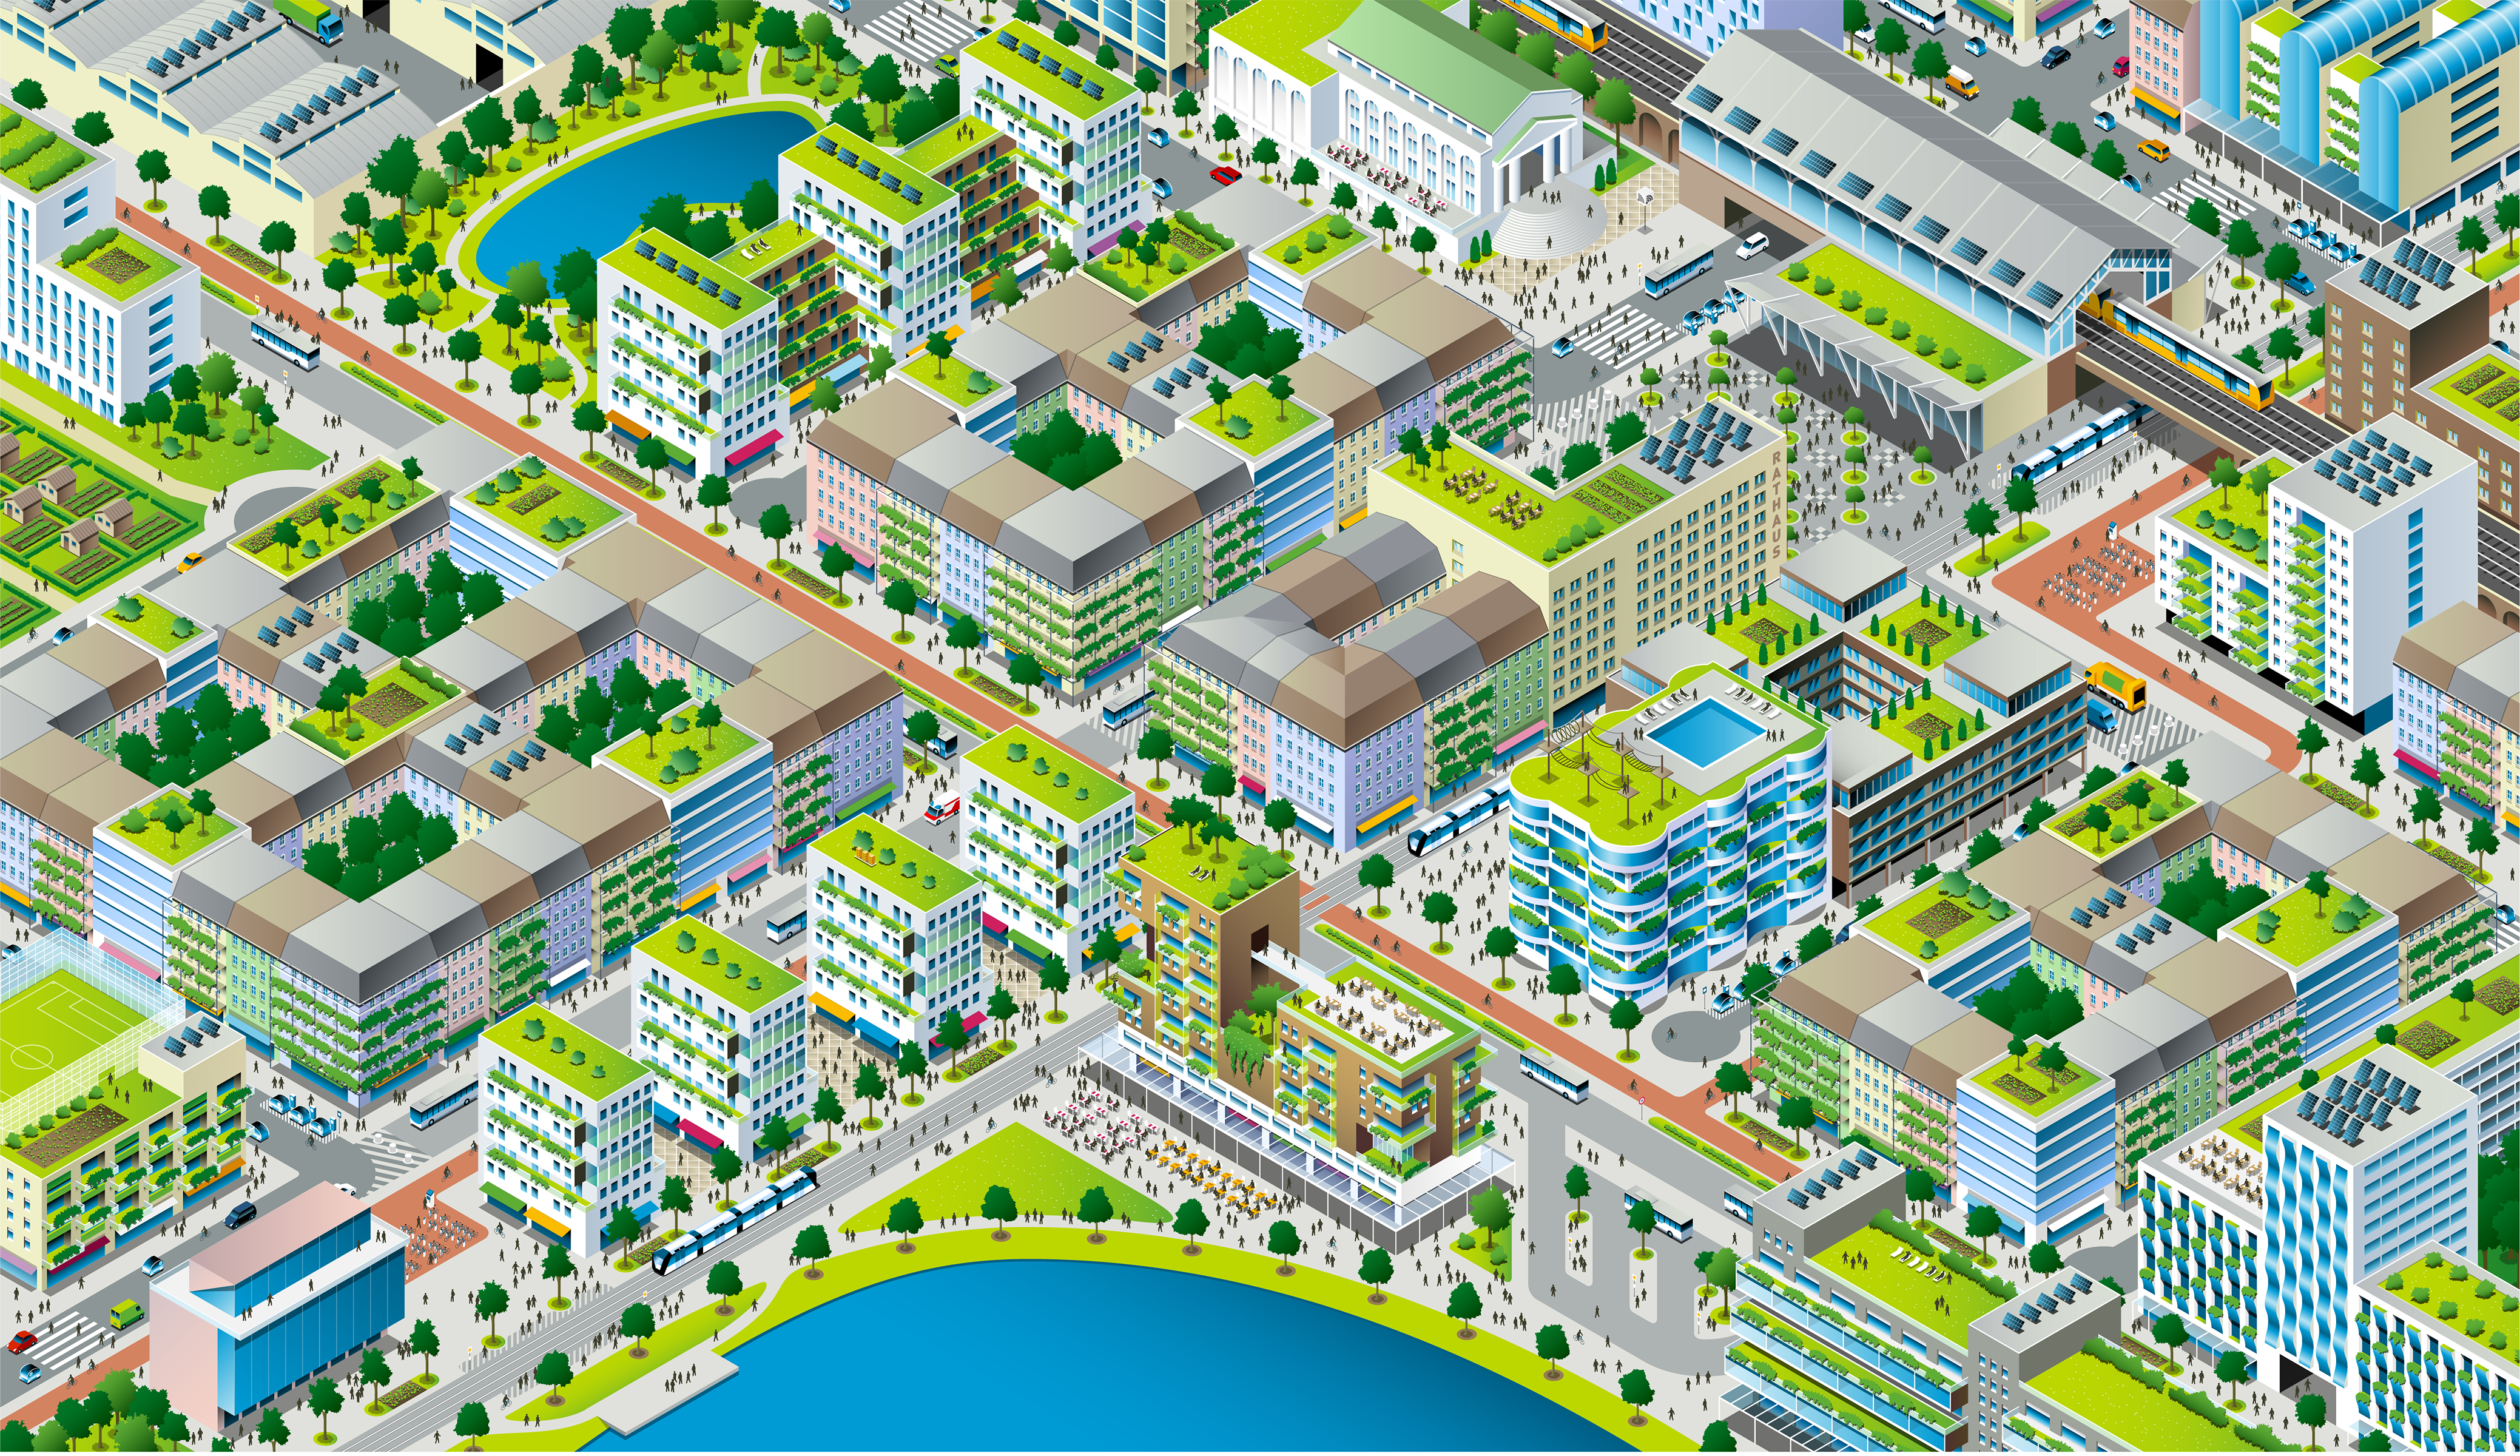 Das Bild zeigt die Graphik einer lärmarmen, grünen, kompakten und durchmischten Stadt.